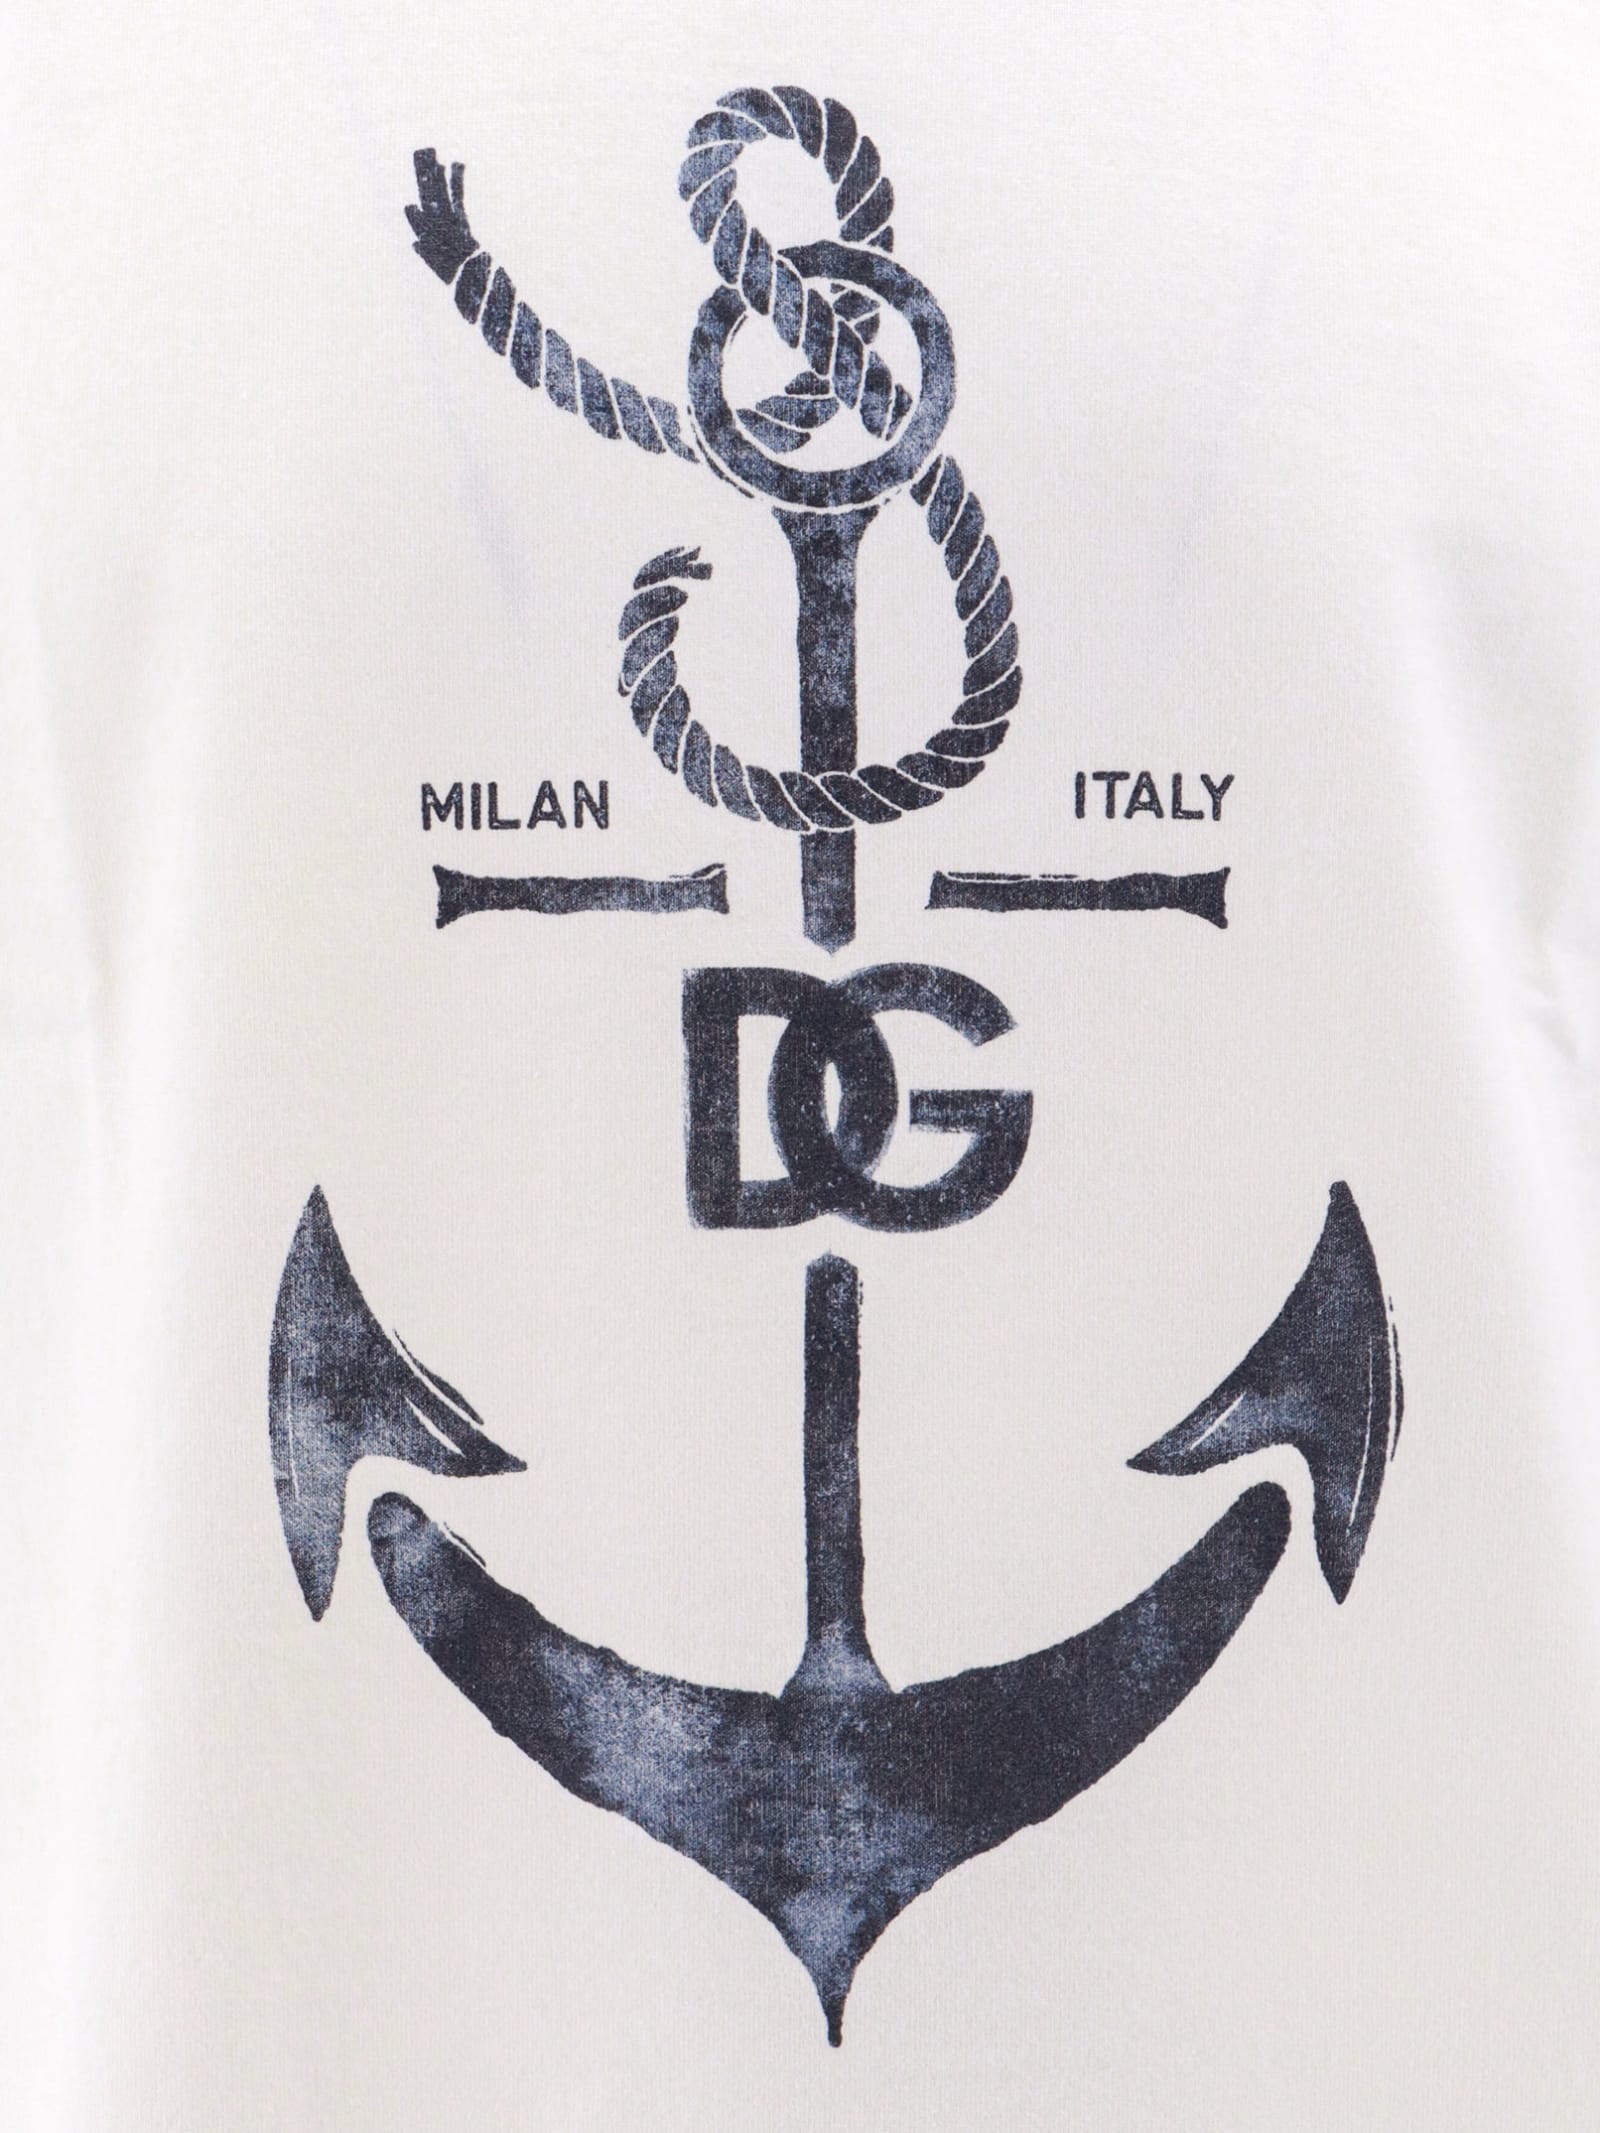 Shop Dolce & Gabbana T-shirt